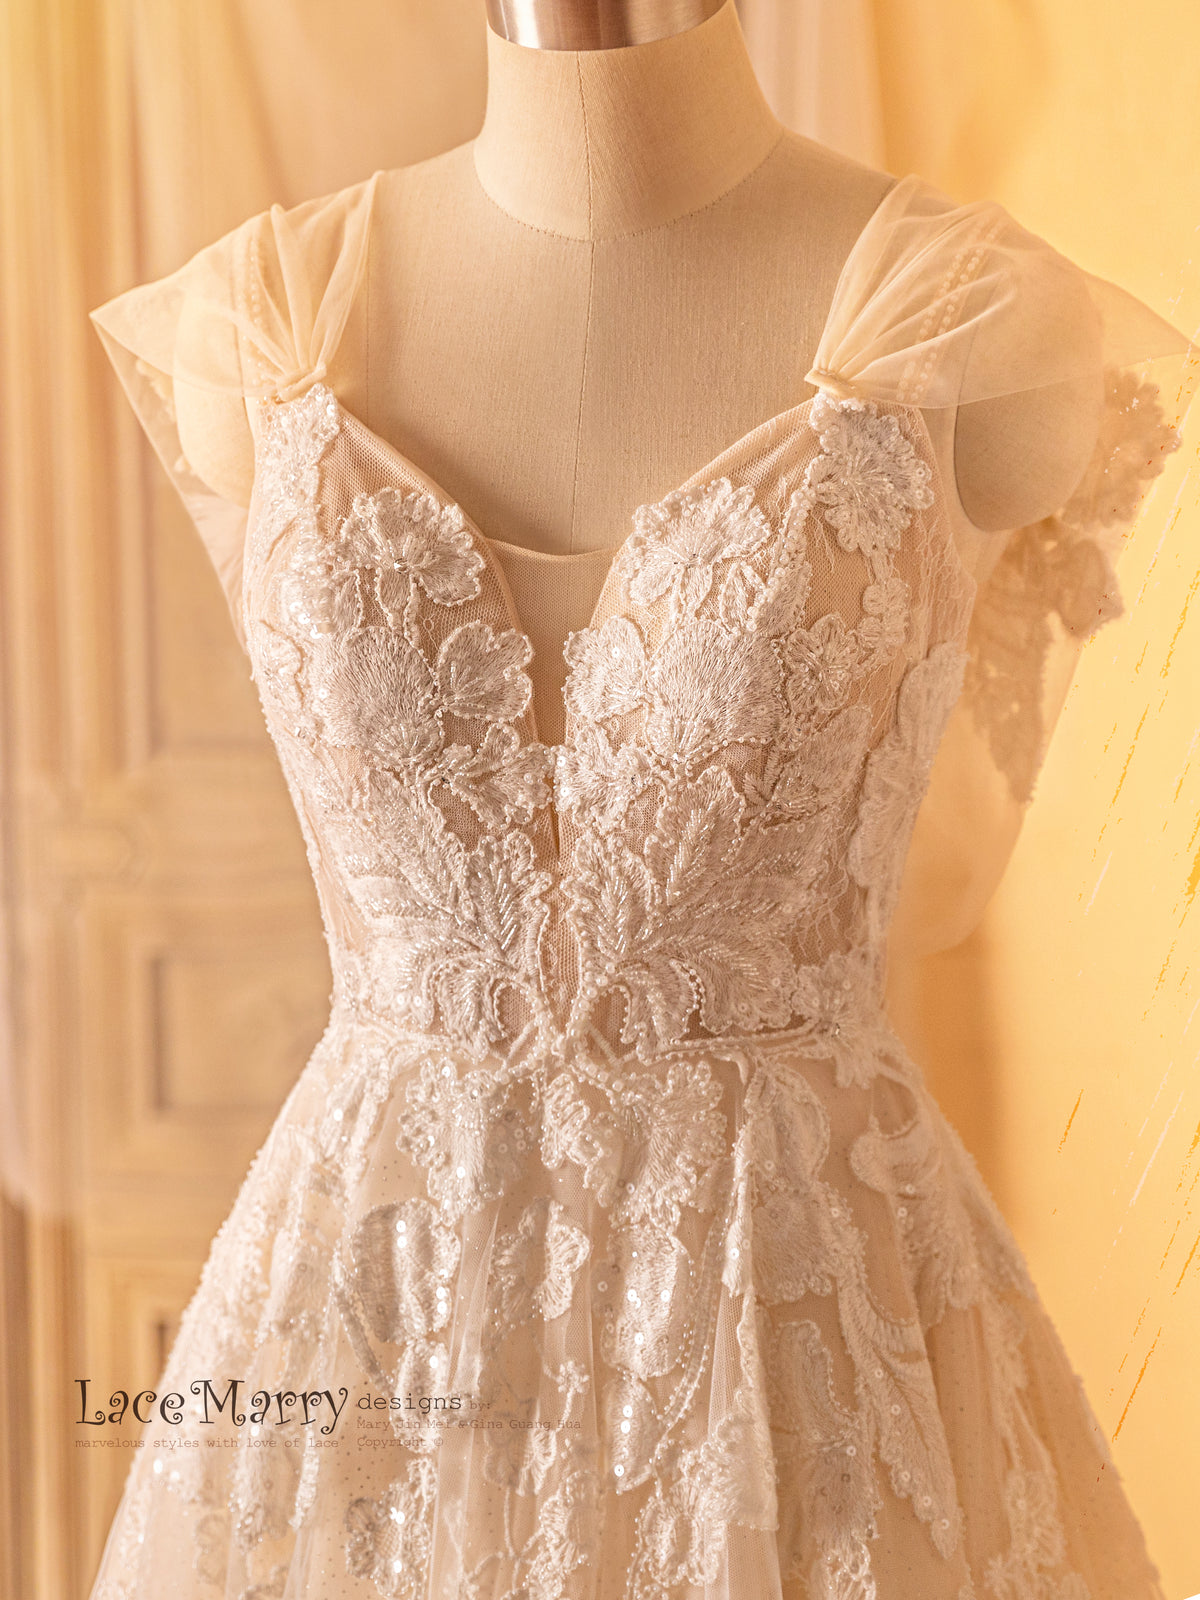 Plunge Neckline Wedding Dress